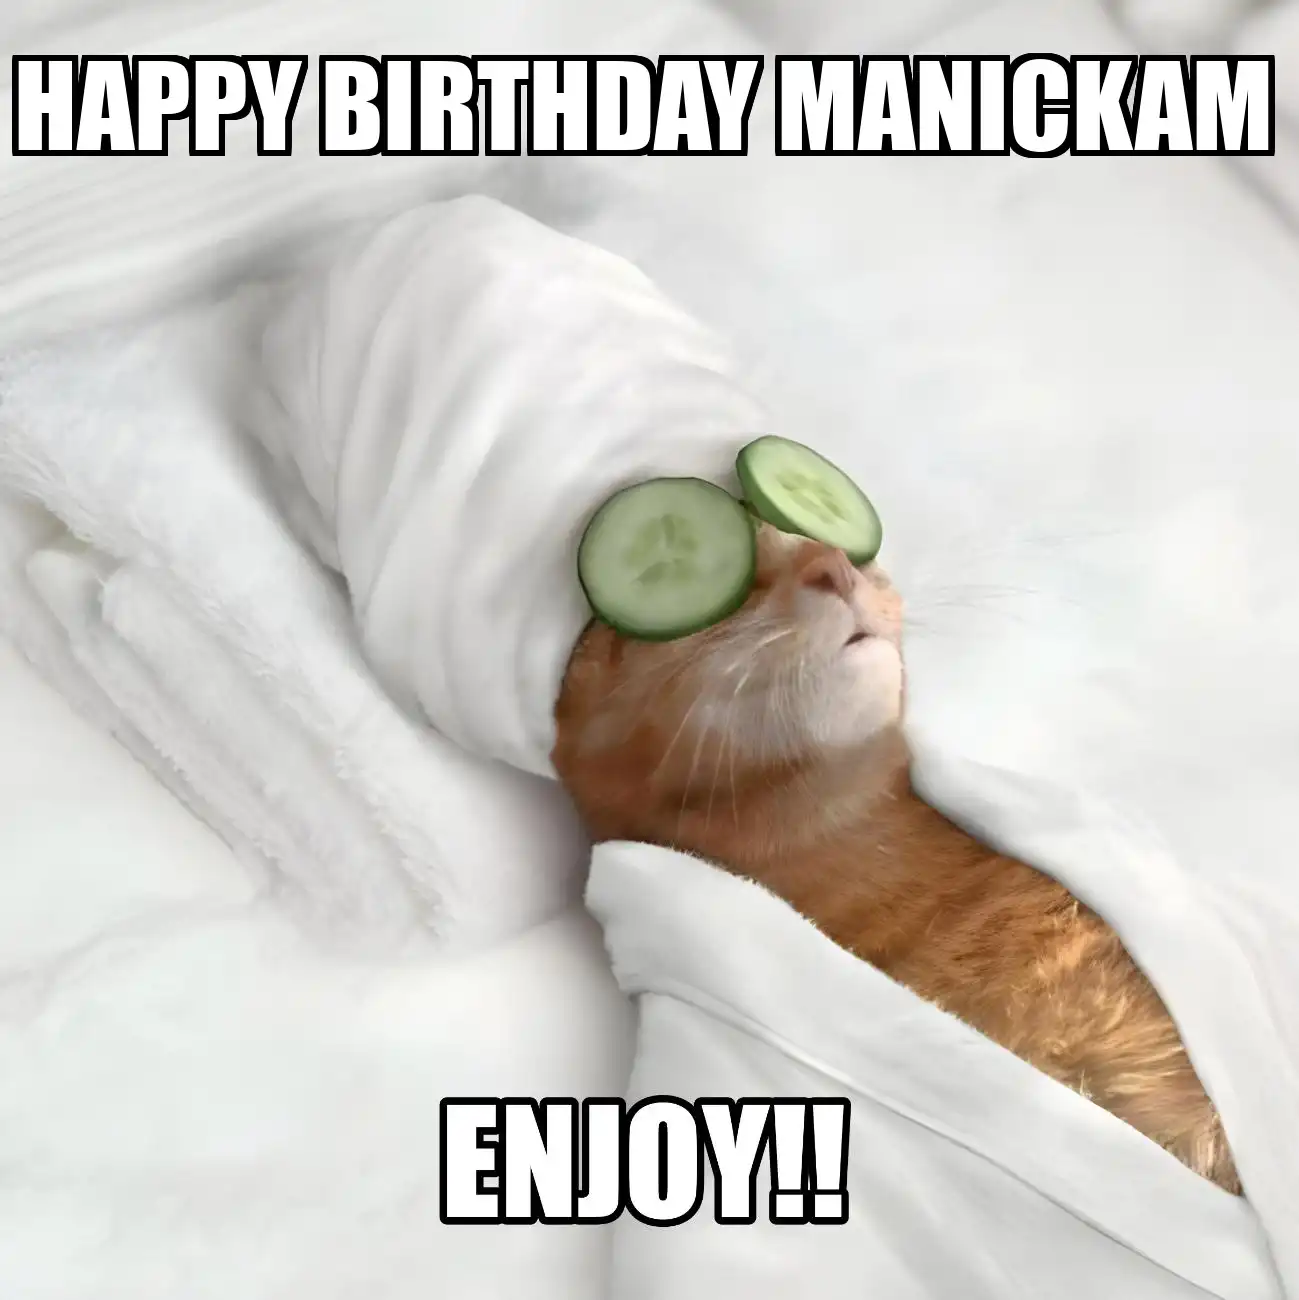 Happy Birthday Manickam Enjoy Cat Meme